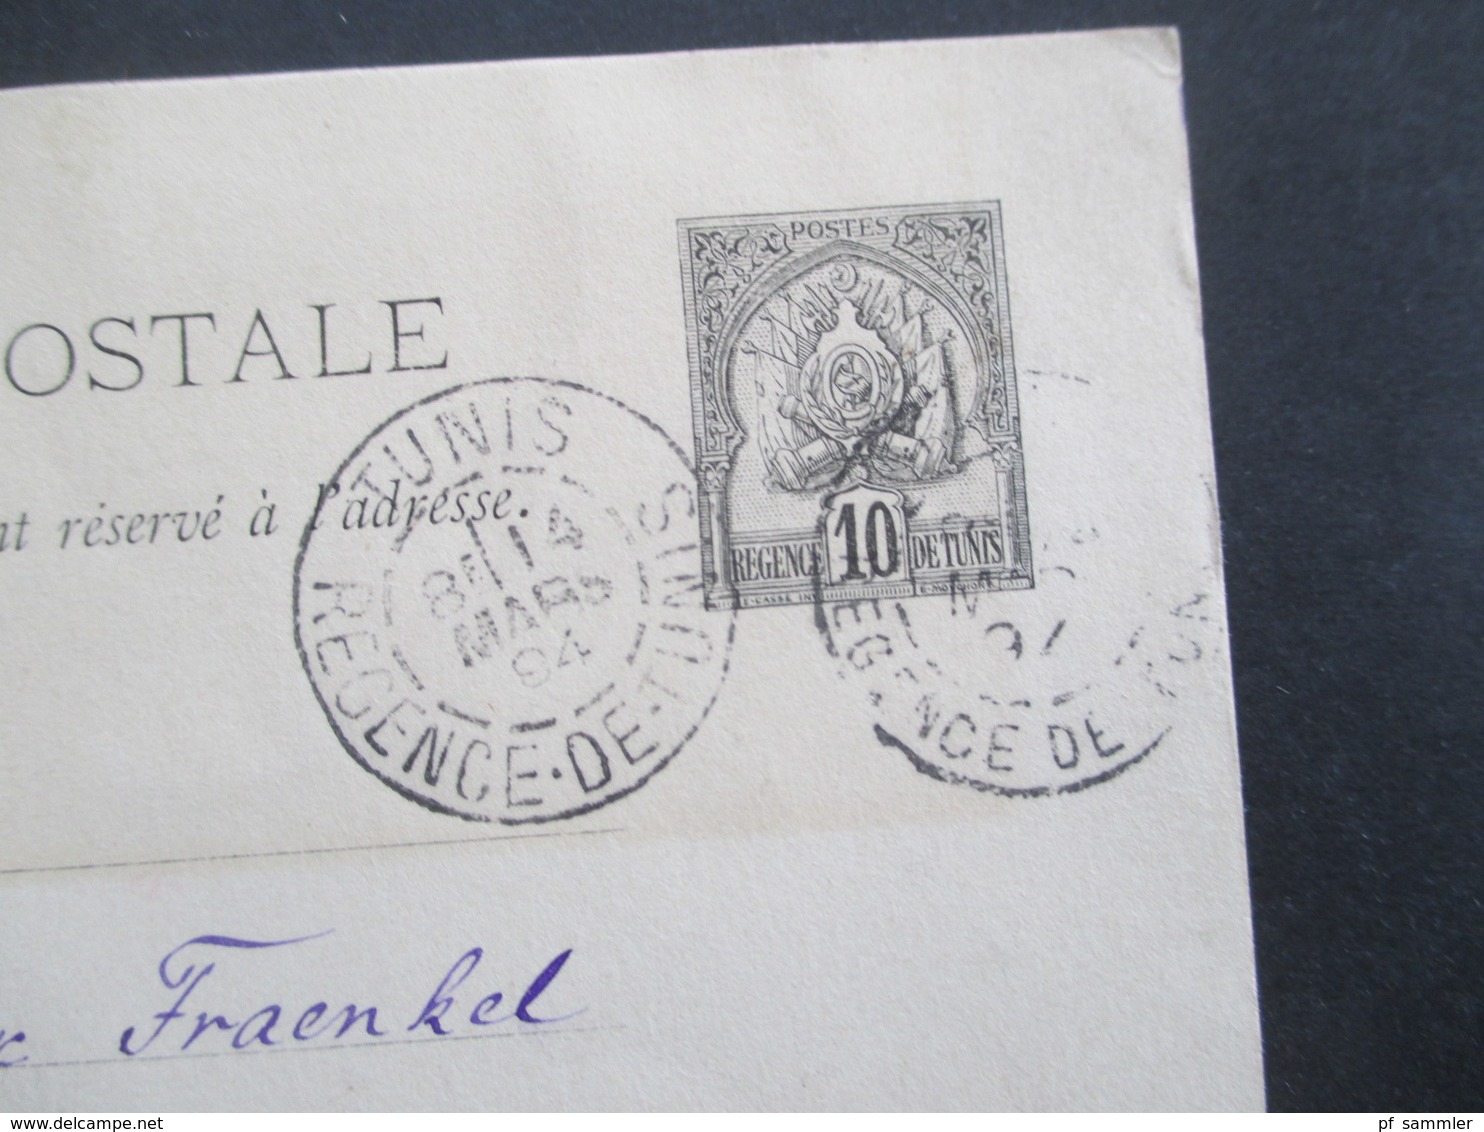 Kolonie Tuniesien 1910 / 1911 Ganzsachen / Postkarten / Umschläge / 1x Lettre Expres alle ans Deutsche Konsulat in Tunis